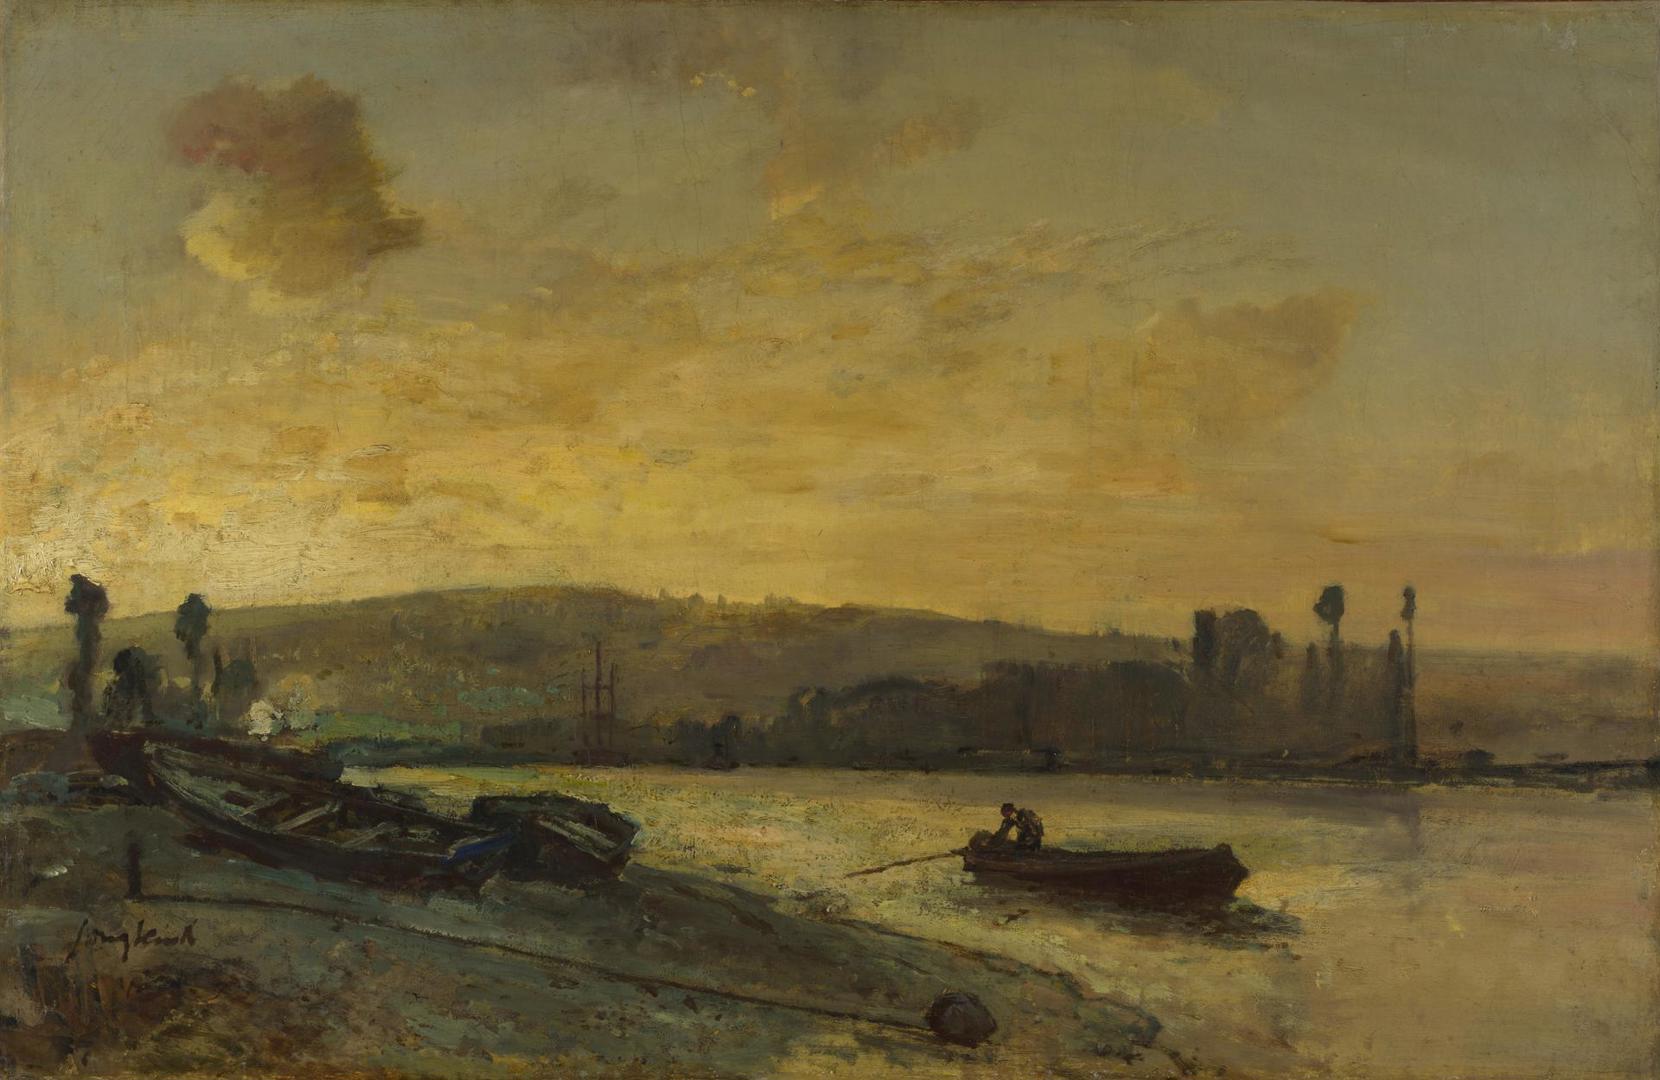 River Scene by Johan Barthold Jongkind